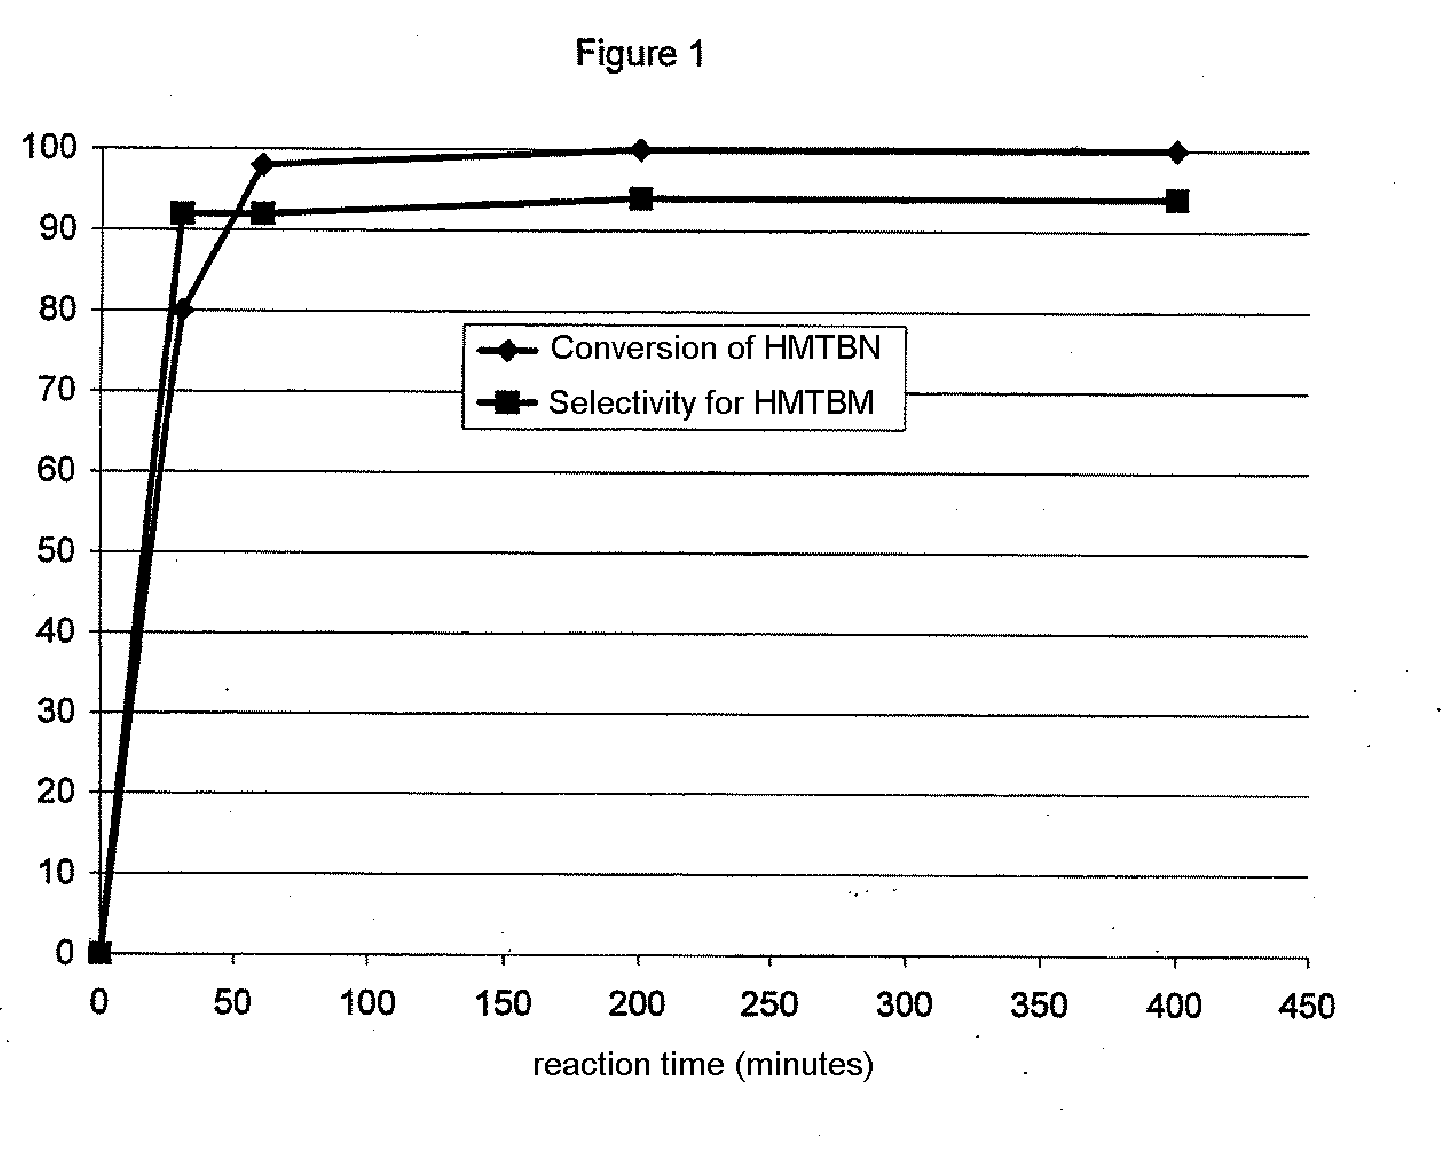 Method for the catalytic conversion of 2-hydroxy-4-methylthiobutanenitrile (HMTBN) into 2-hydroxy-4-methylthiobutanamide (HMTBM)